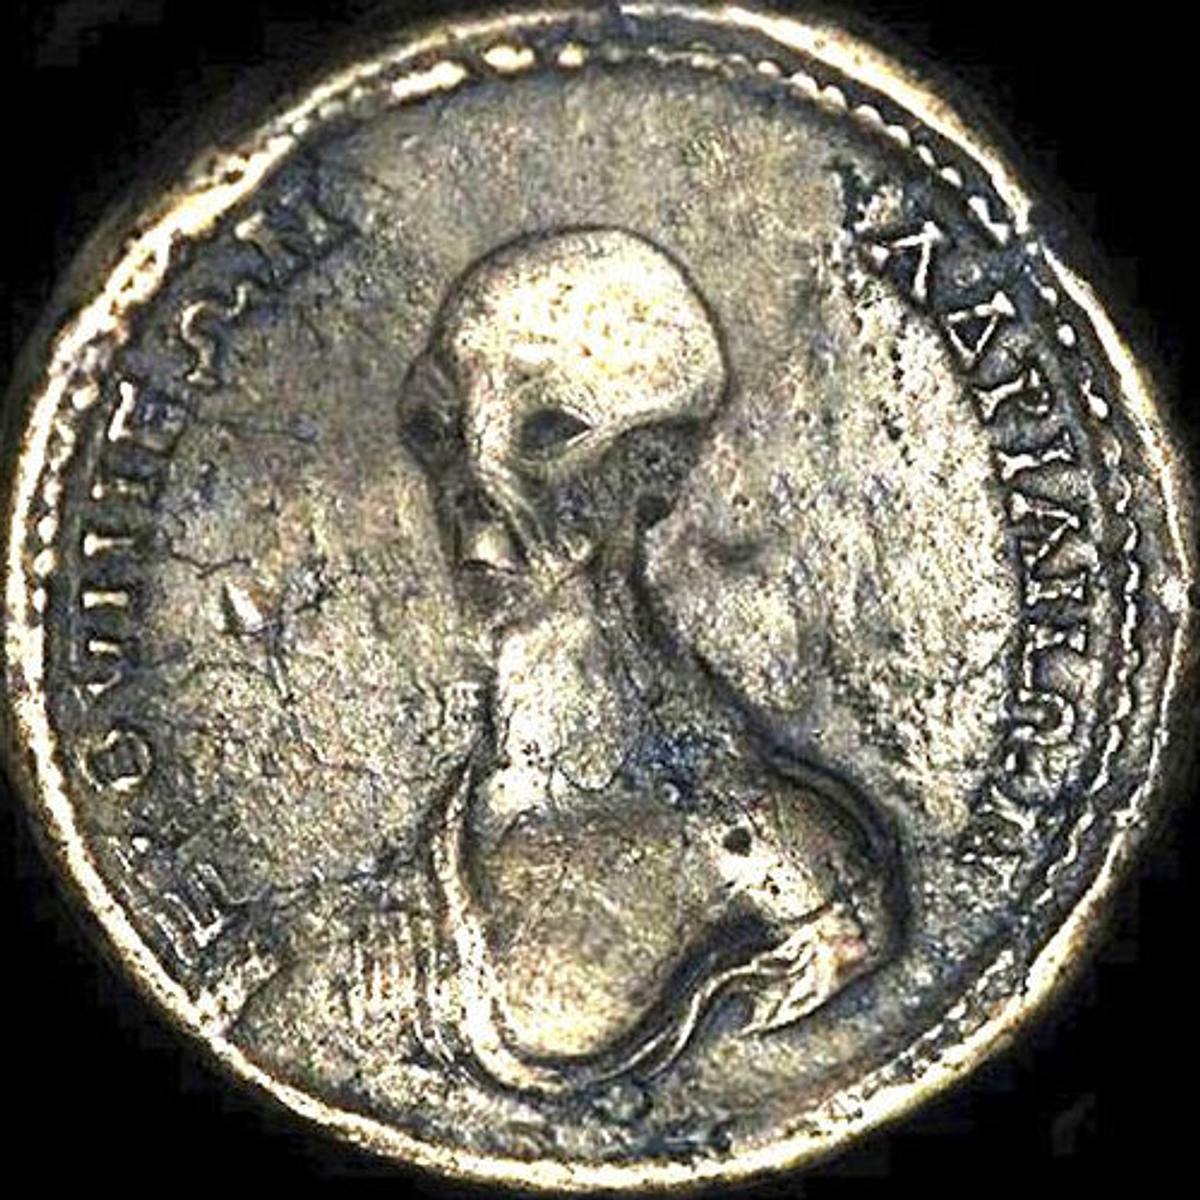 Ist das eine echte Alien-Münze?